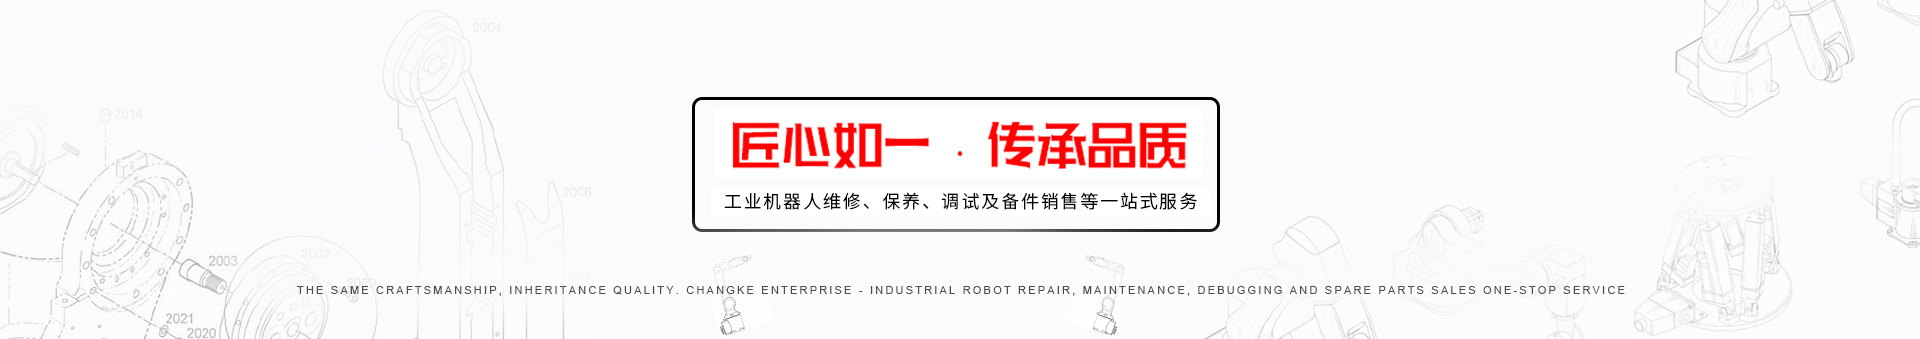 Robot repair